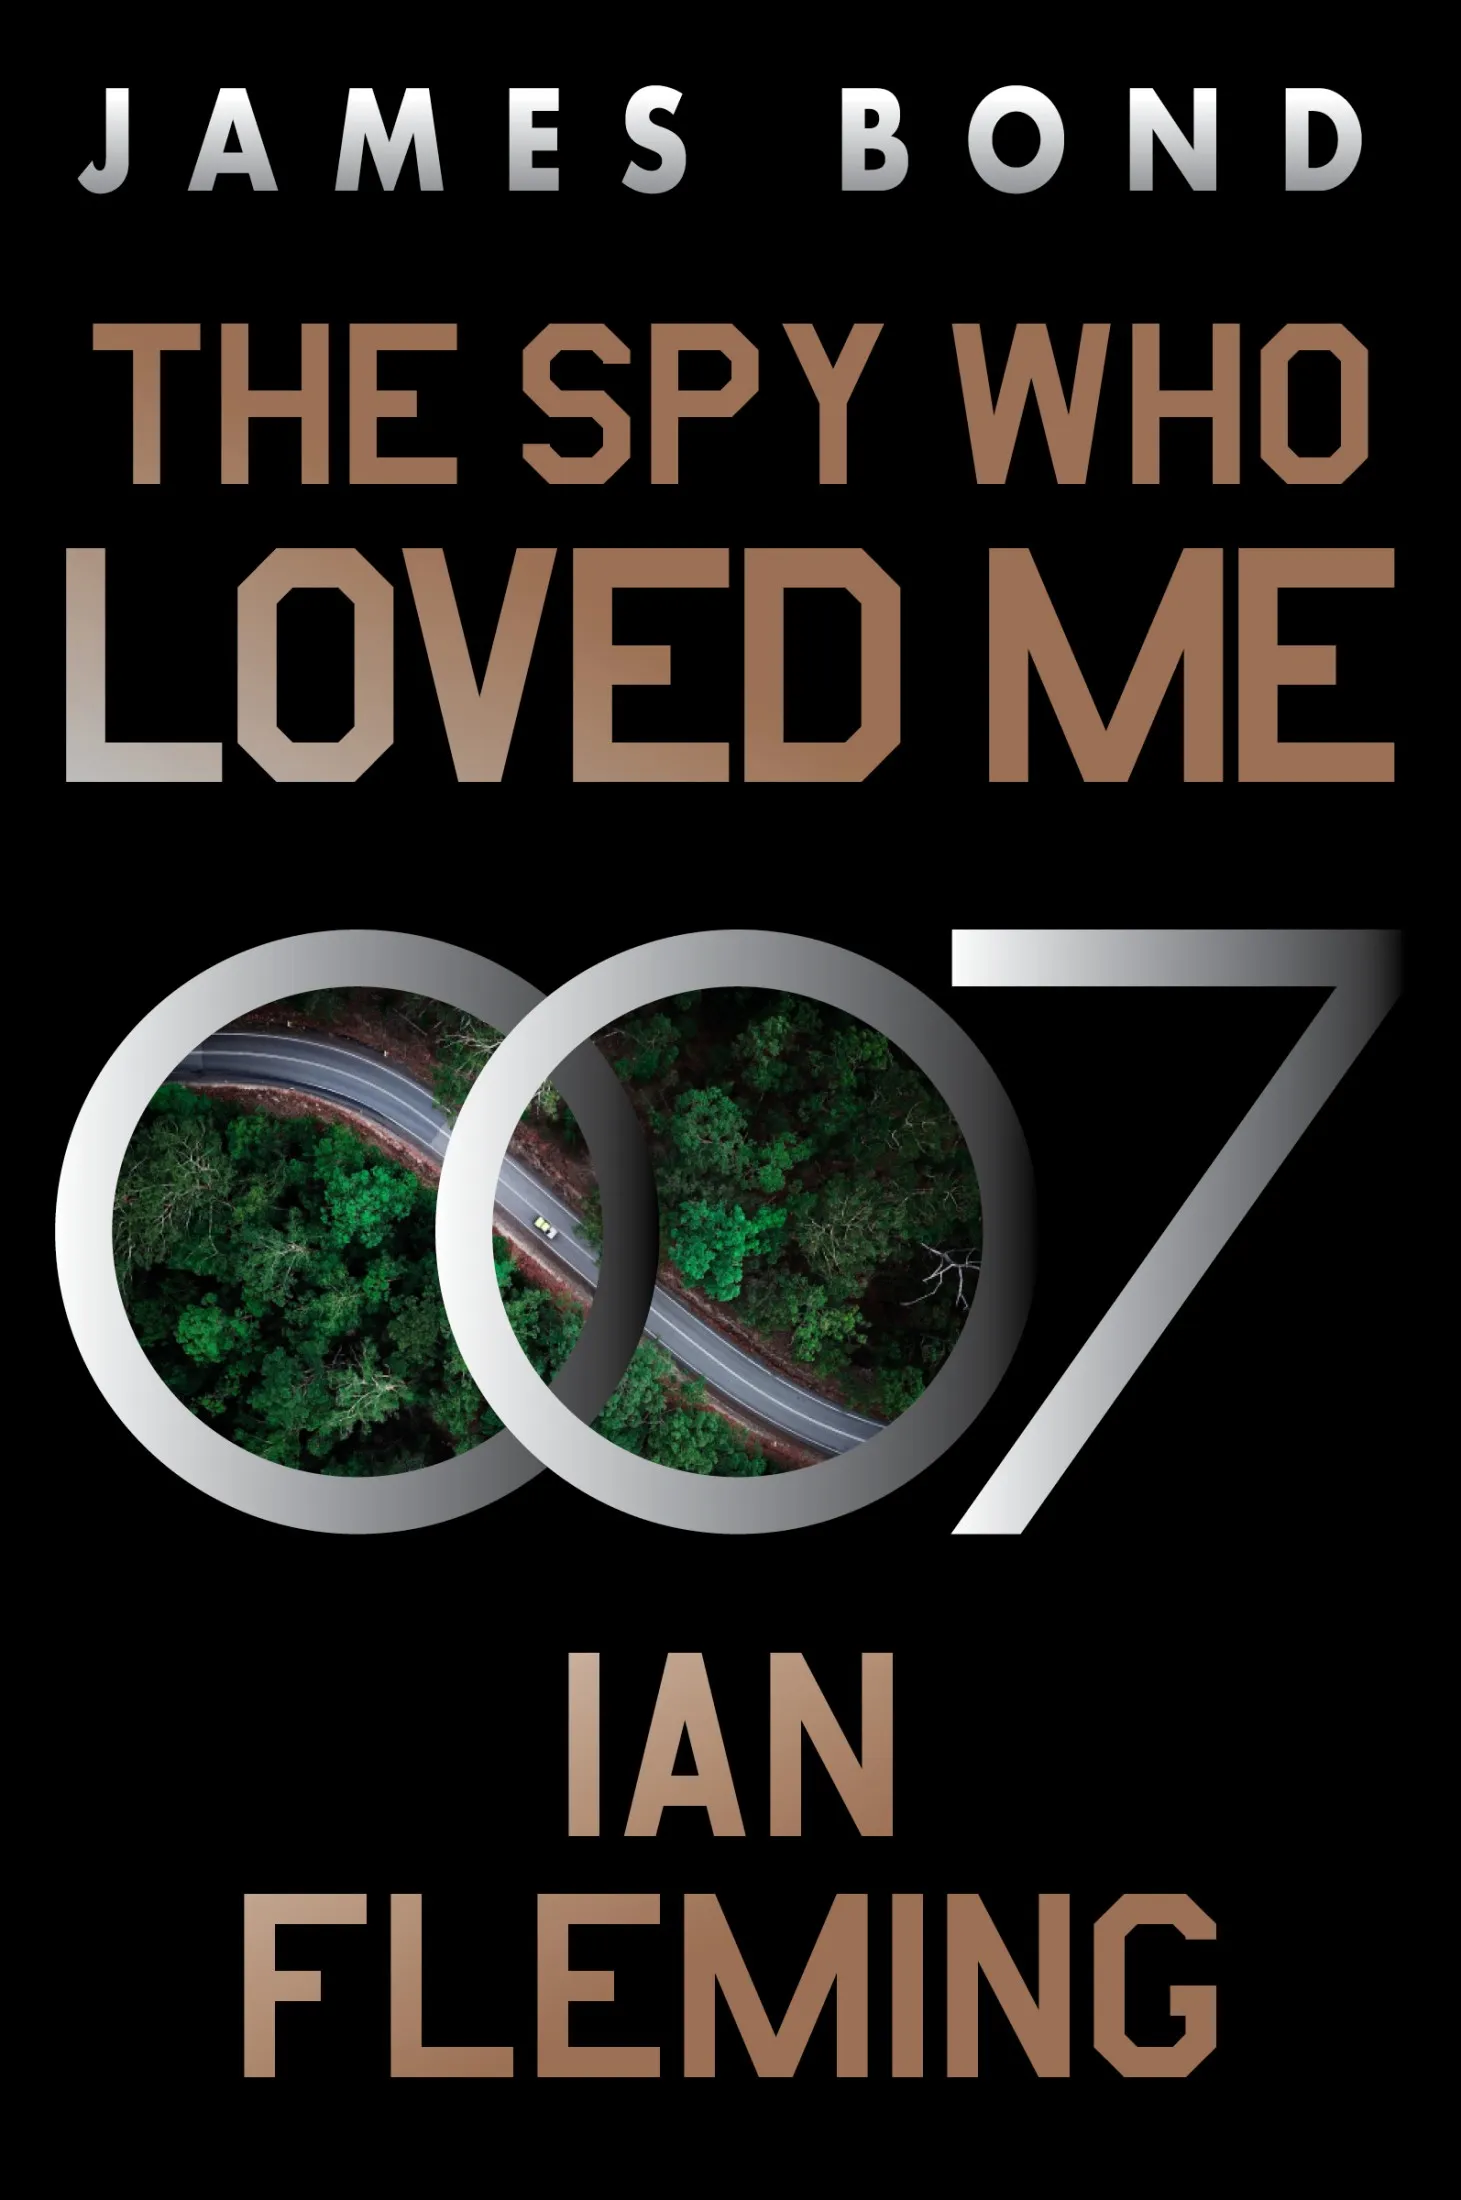 The Spy Who Loved Me (James Bond #10)